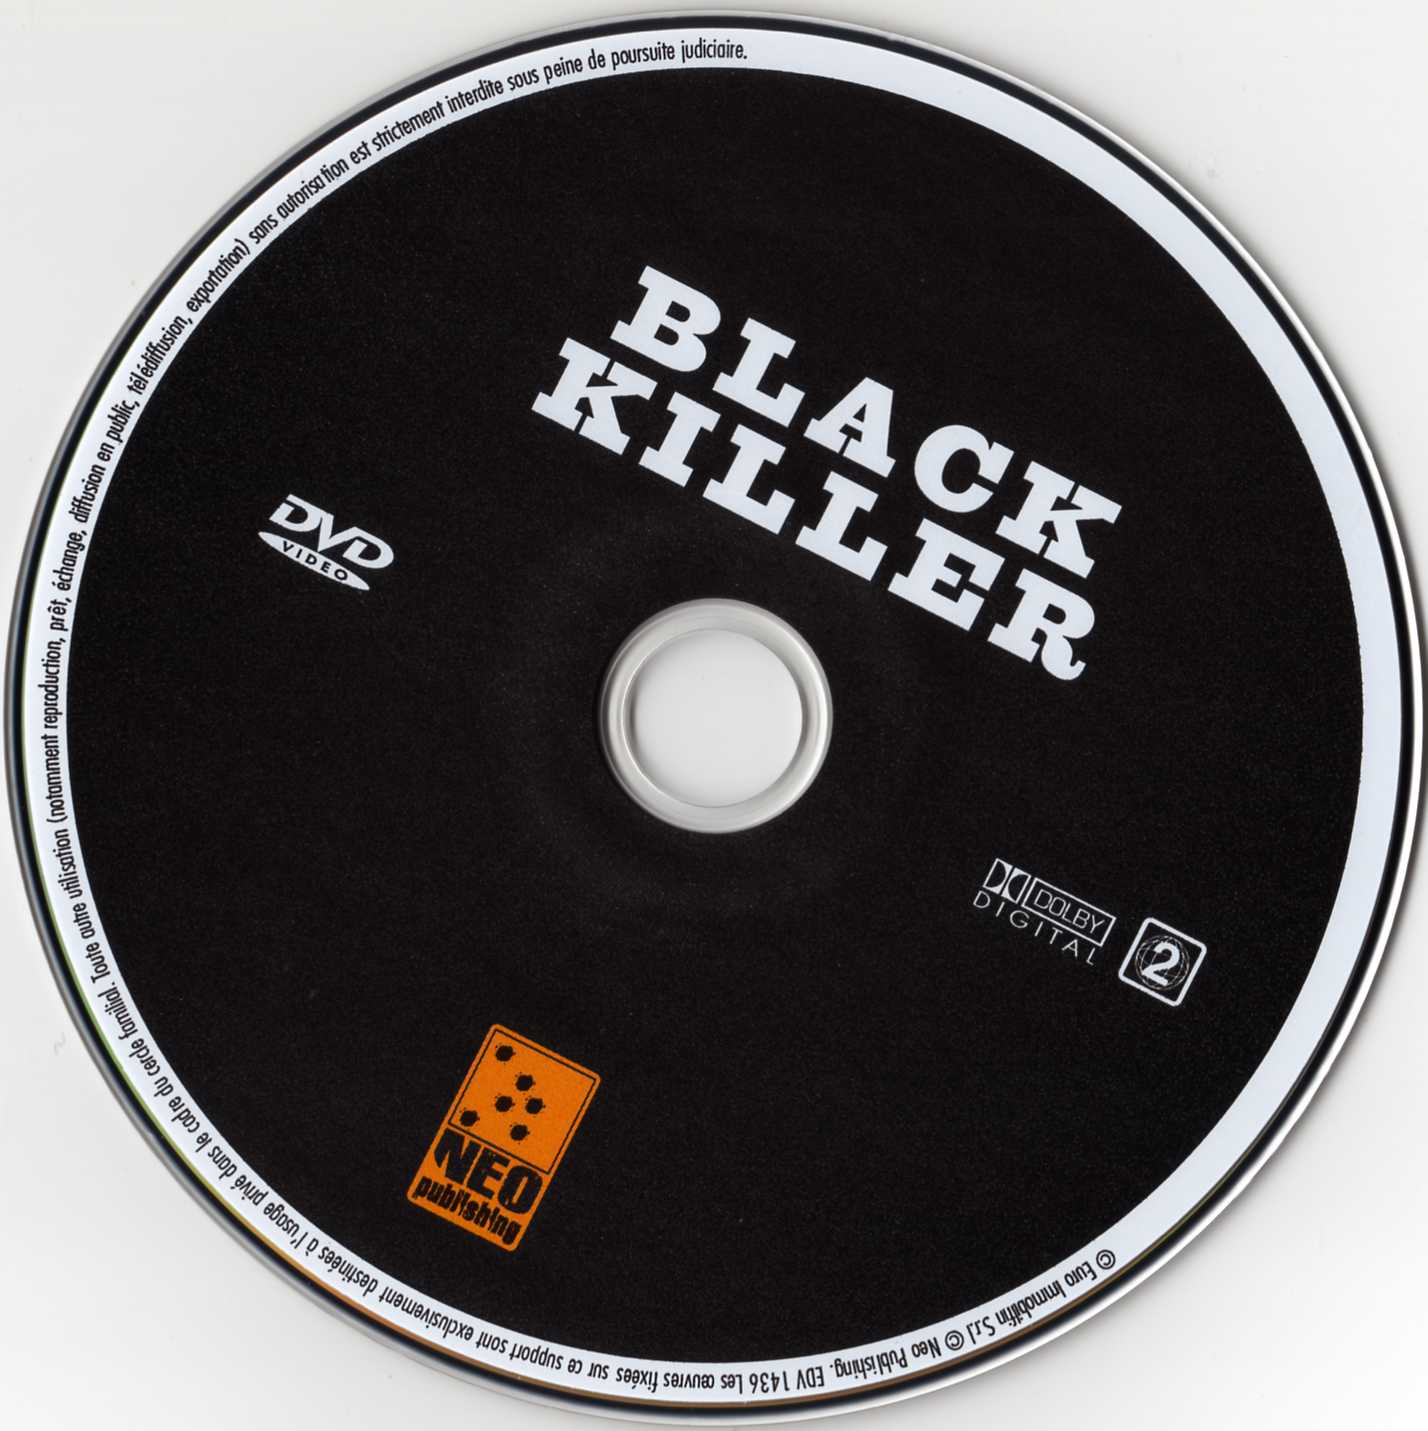 Black killer